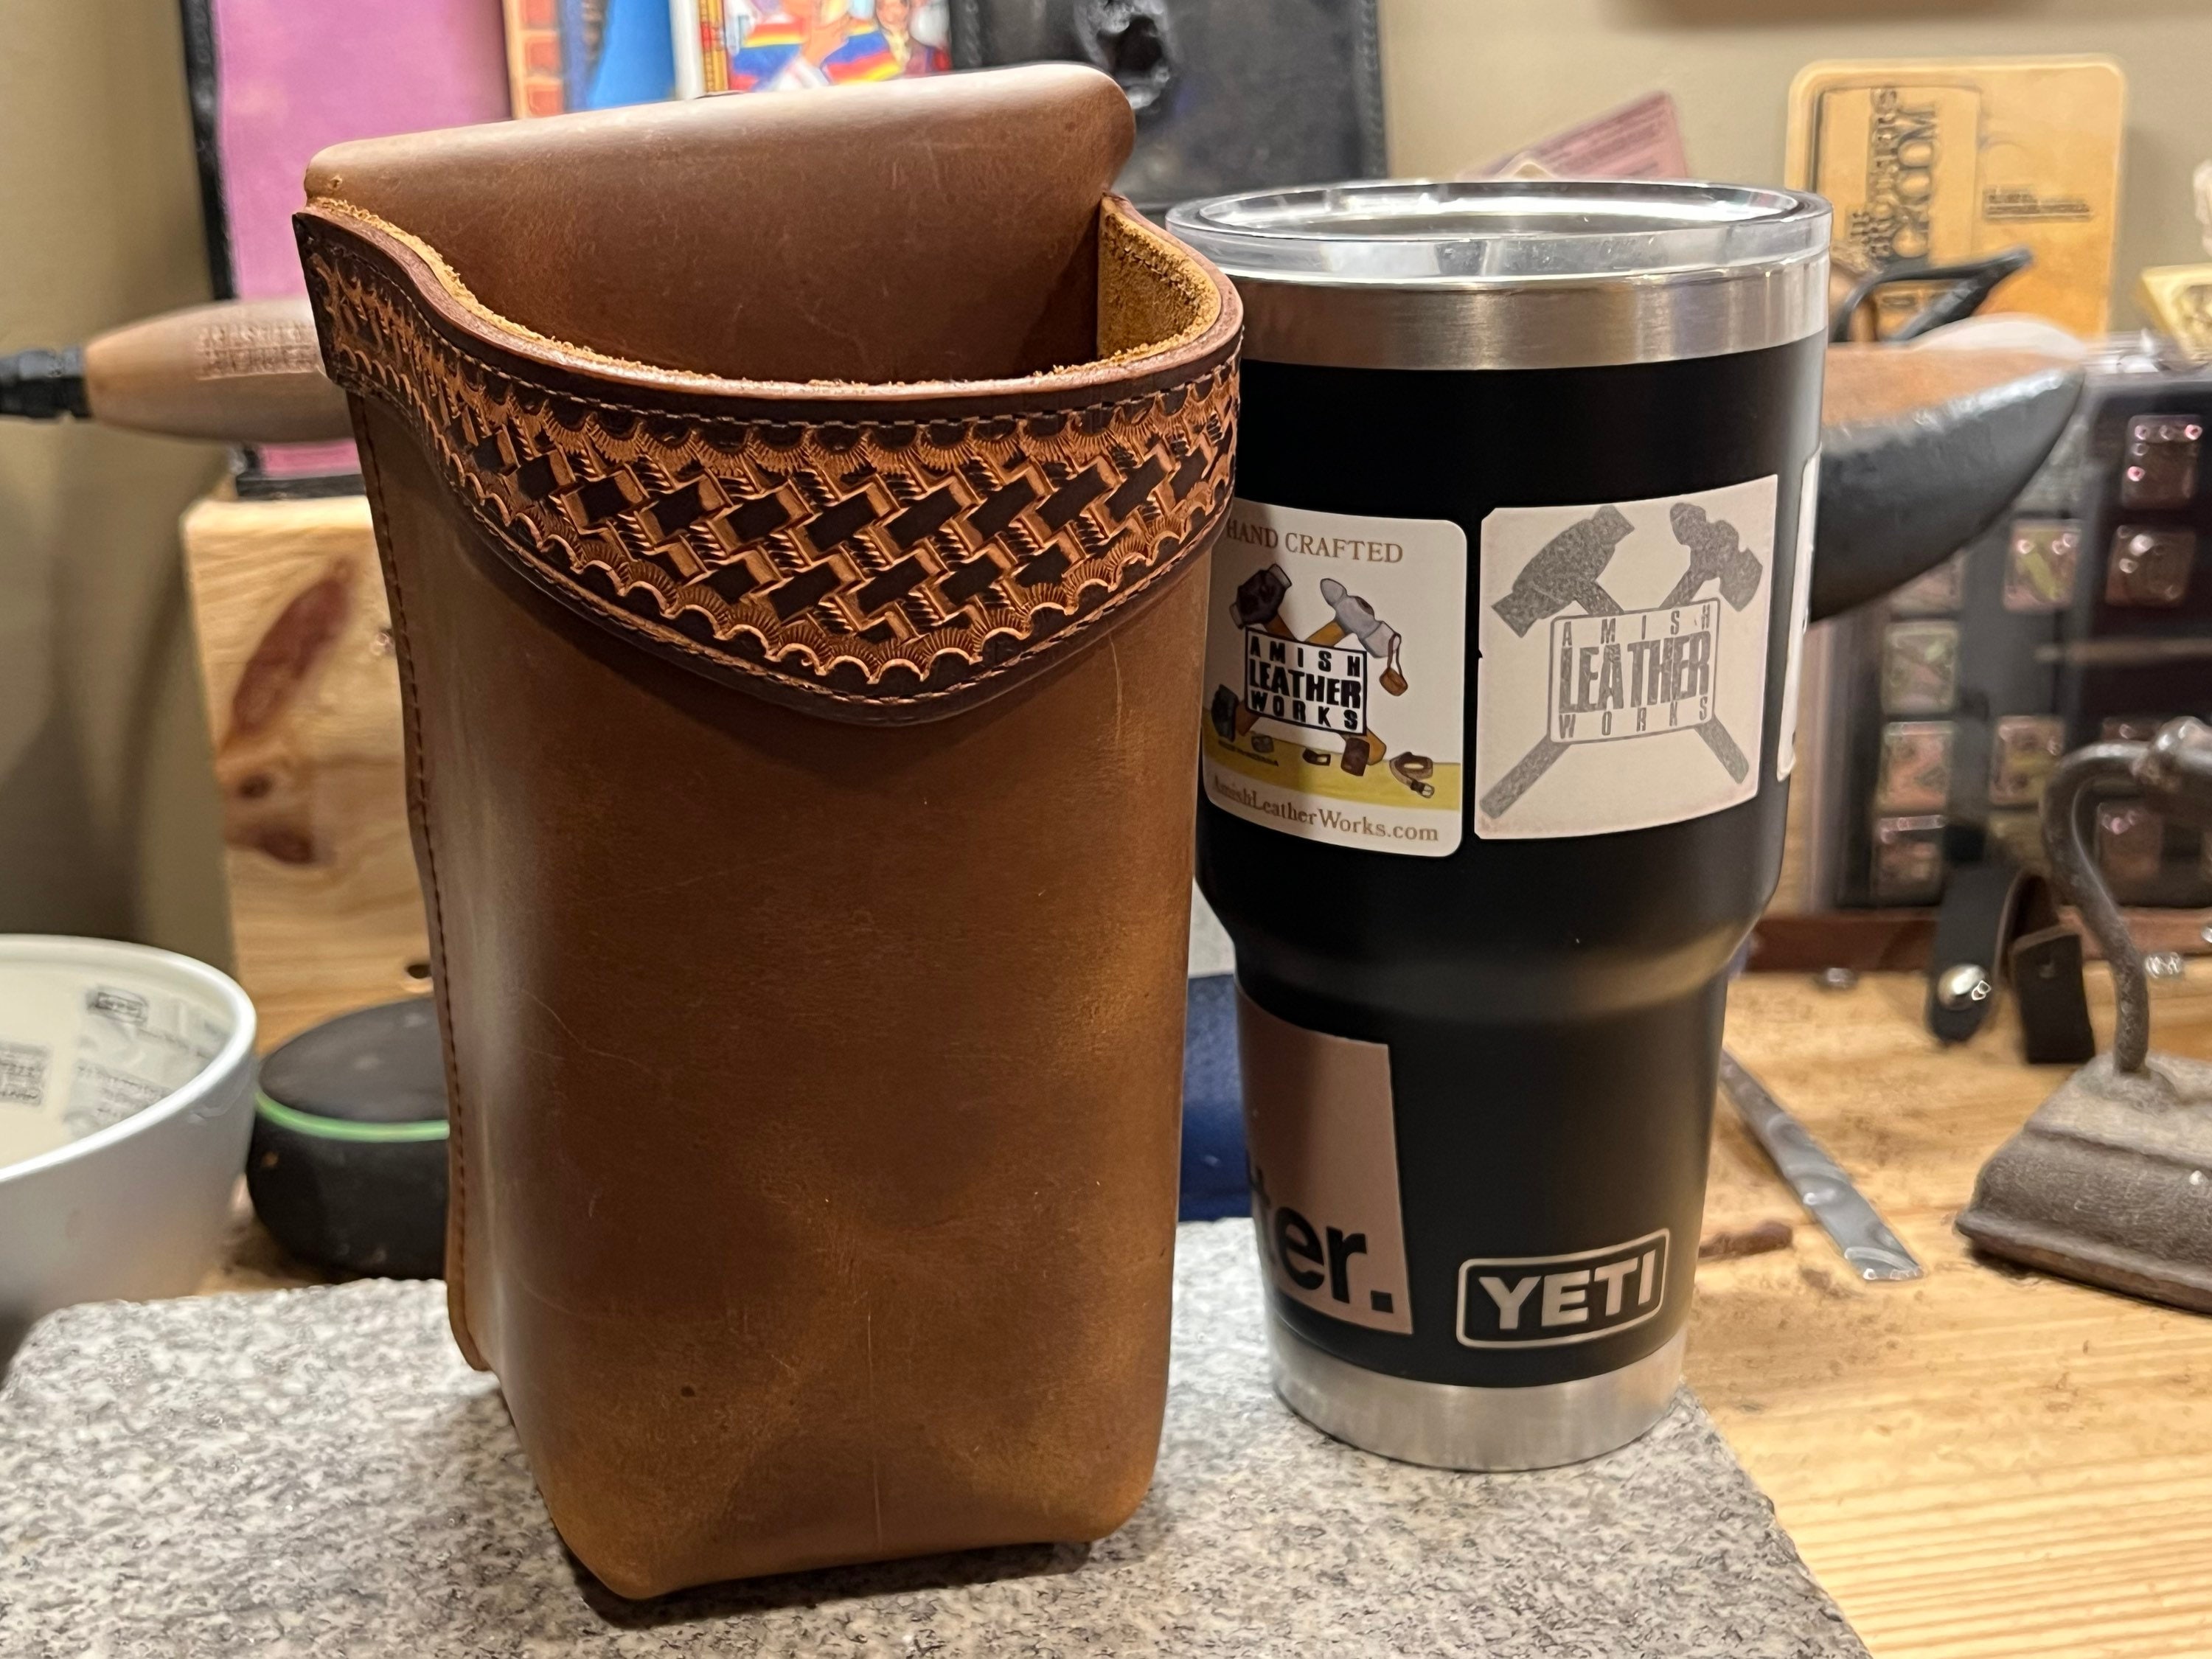 Deluxe Leather Bottle / Travel Mug Holder